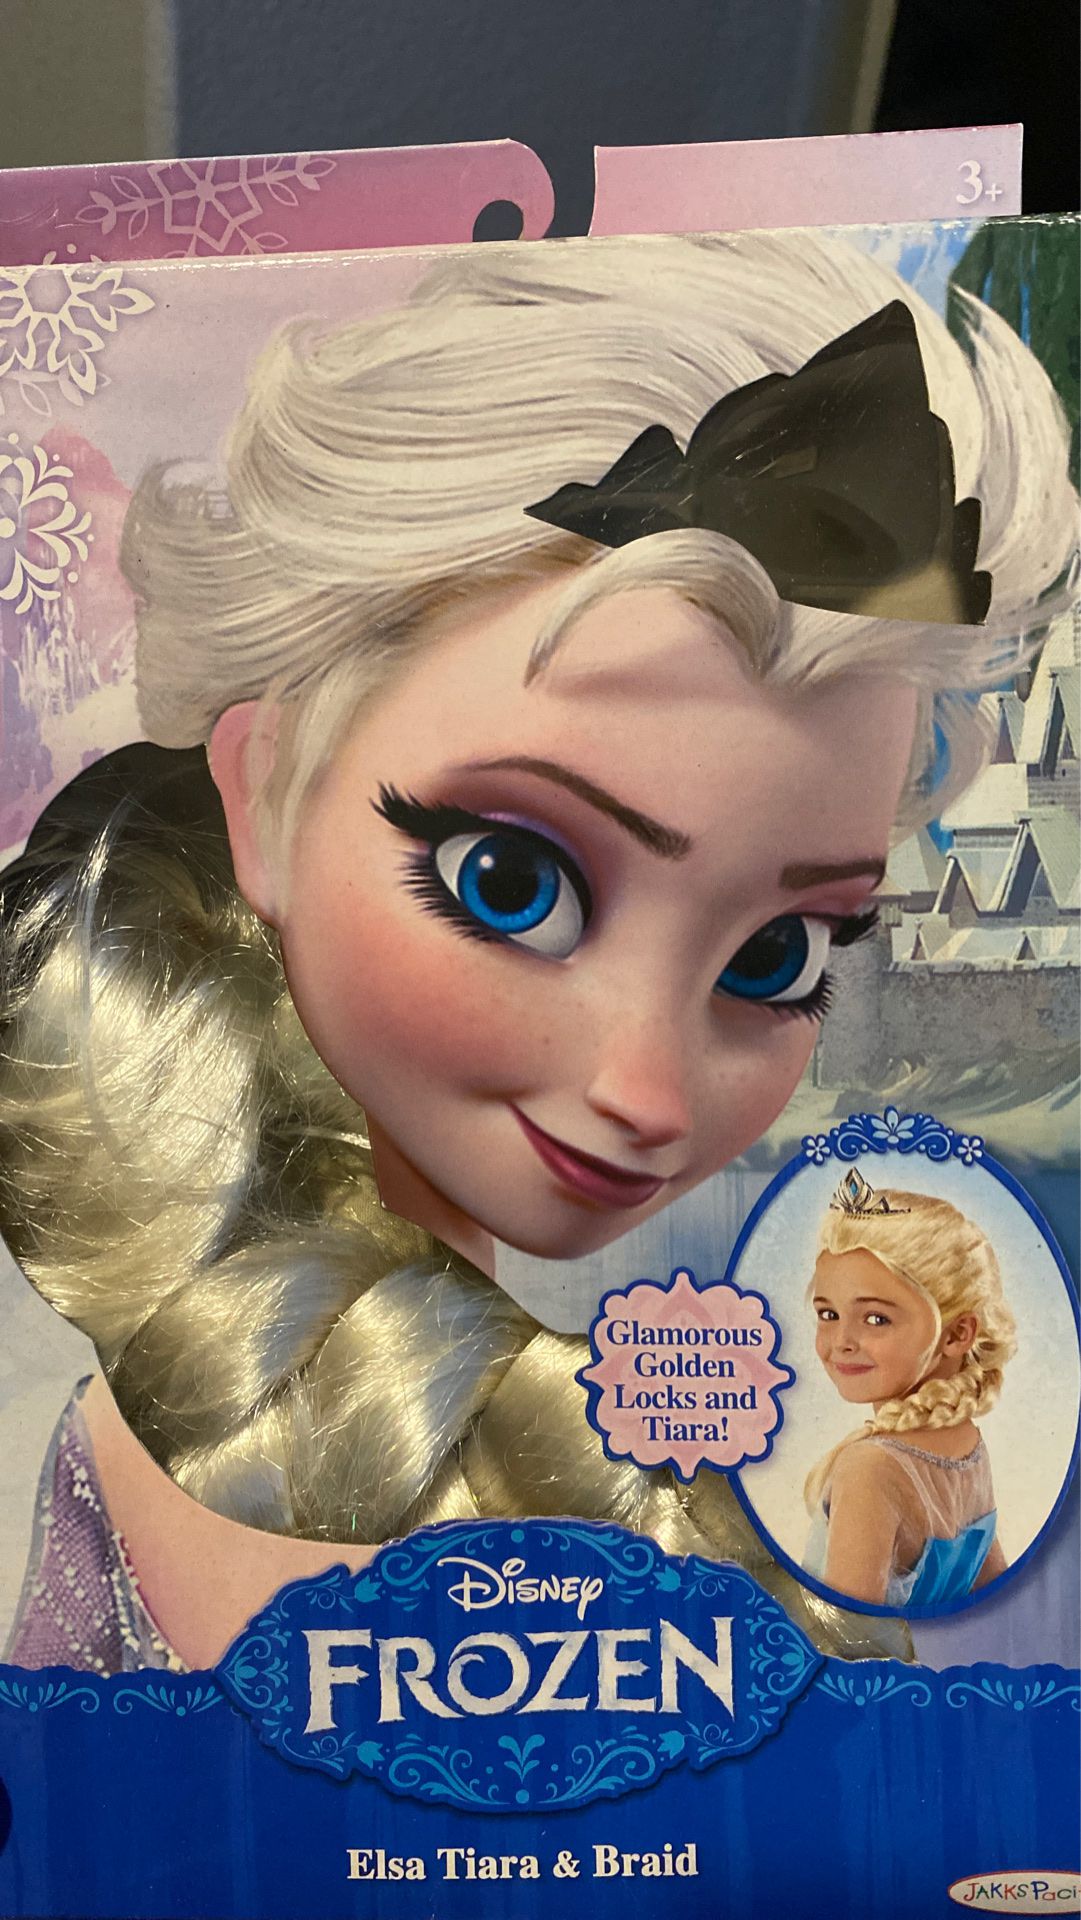 Elsa tiara and braid